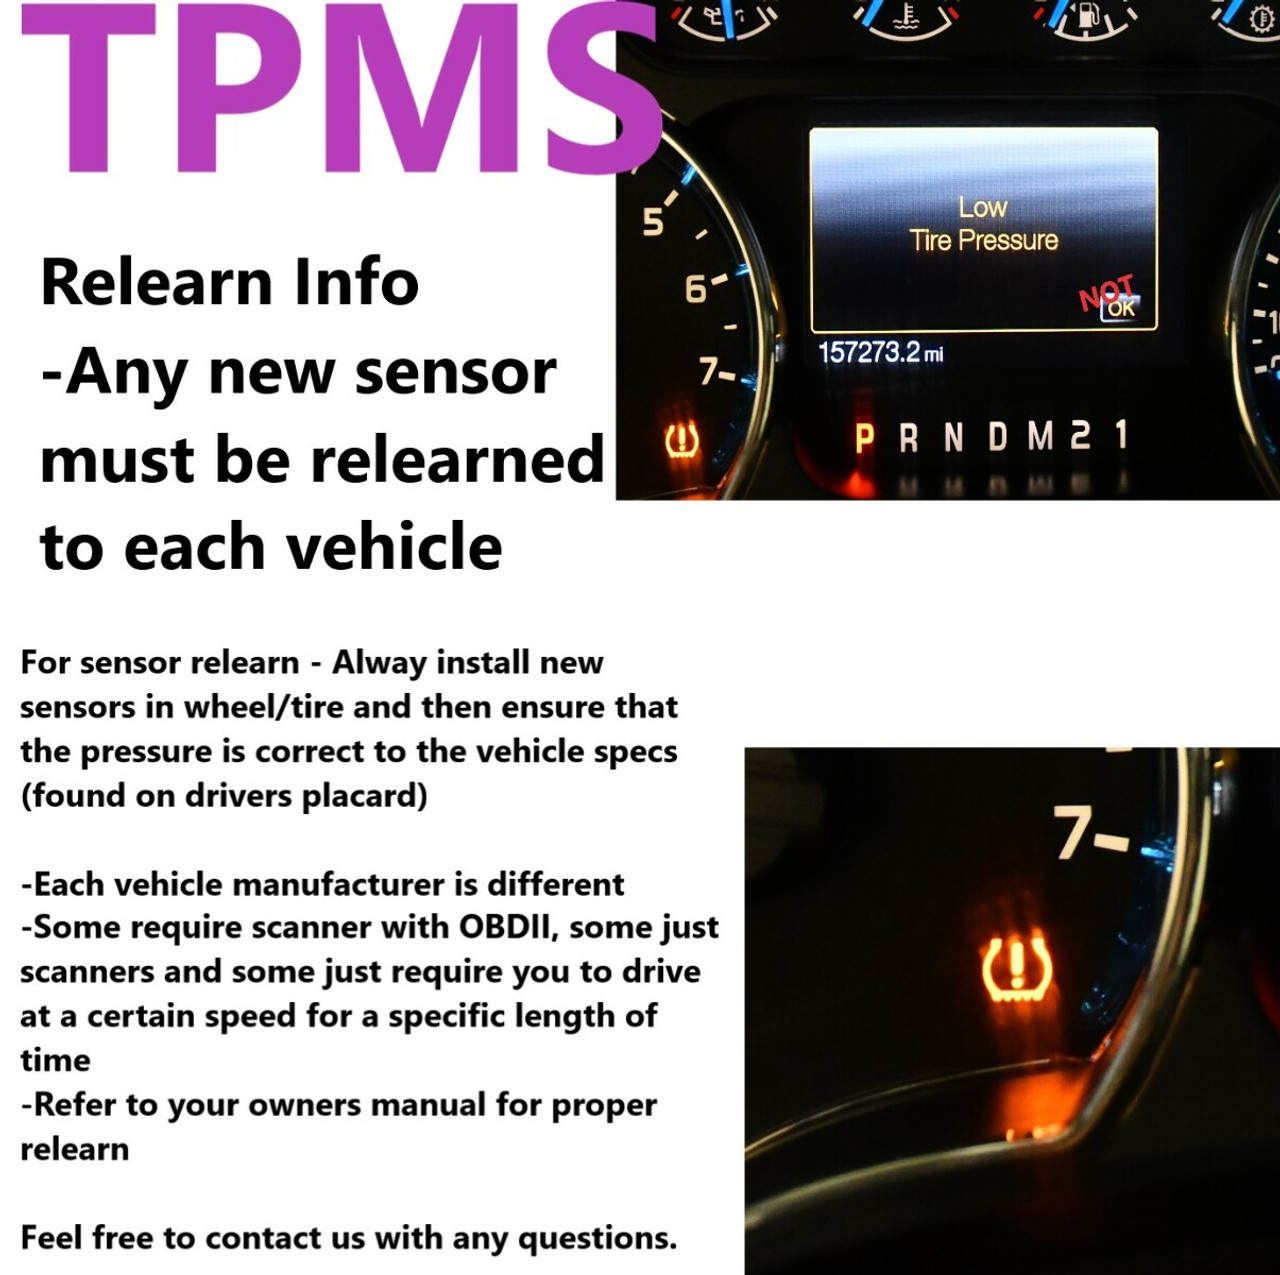 Single TPMS Tire Pressure Sensor 433Mhz Metal fits 19-20 Cadillac CT5-V